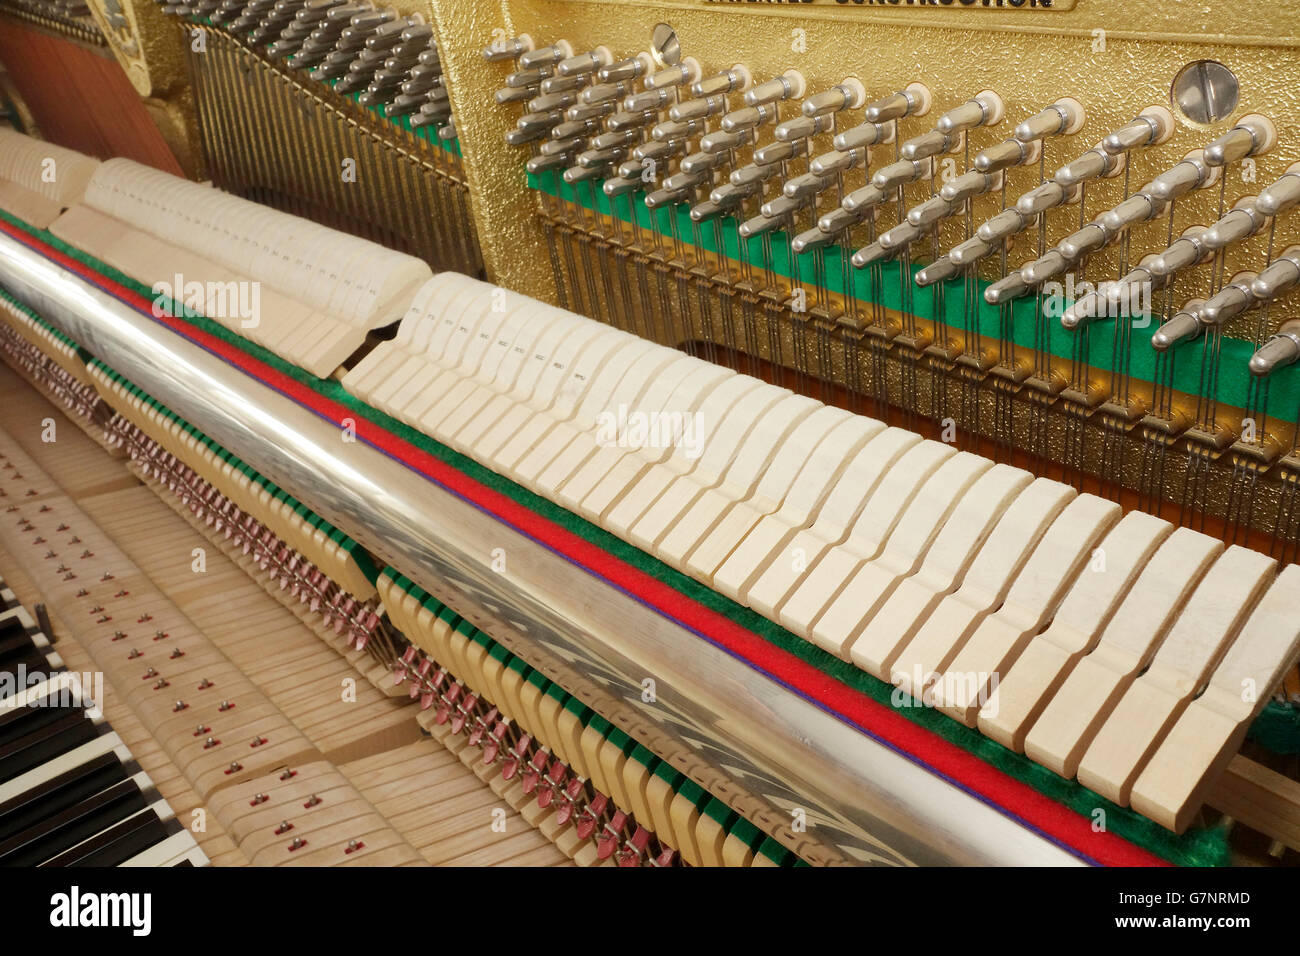 Schrägen Blick auf ein Klavier-Action-Mechanismus. Tastatur, Hammer-Schiene, Hämmer und tuning Pins am Stimmstock sind in Sicht. Stockfoto